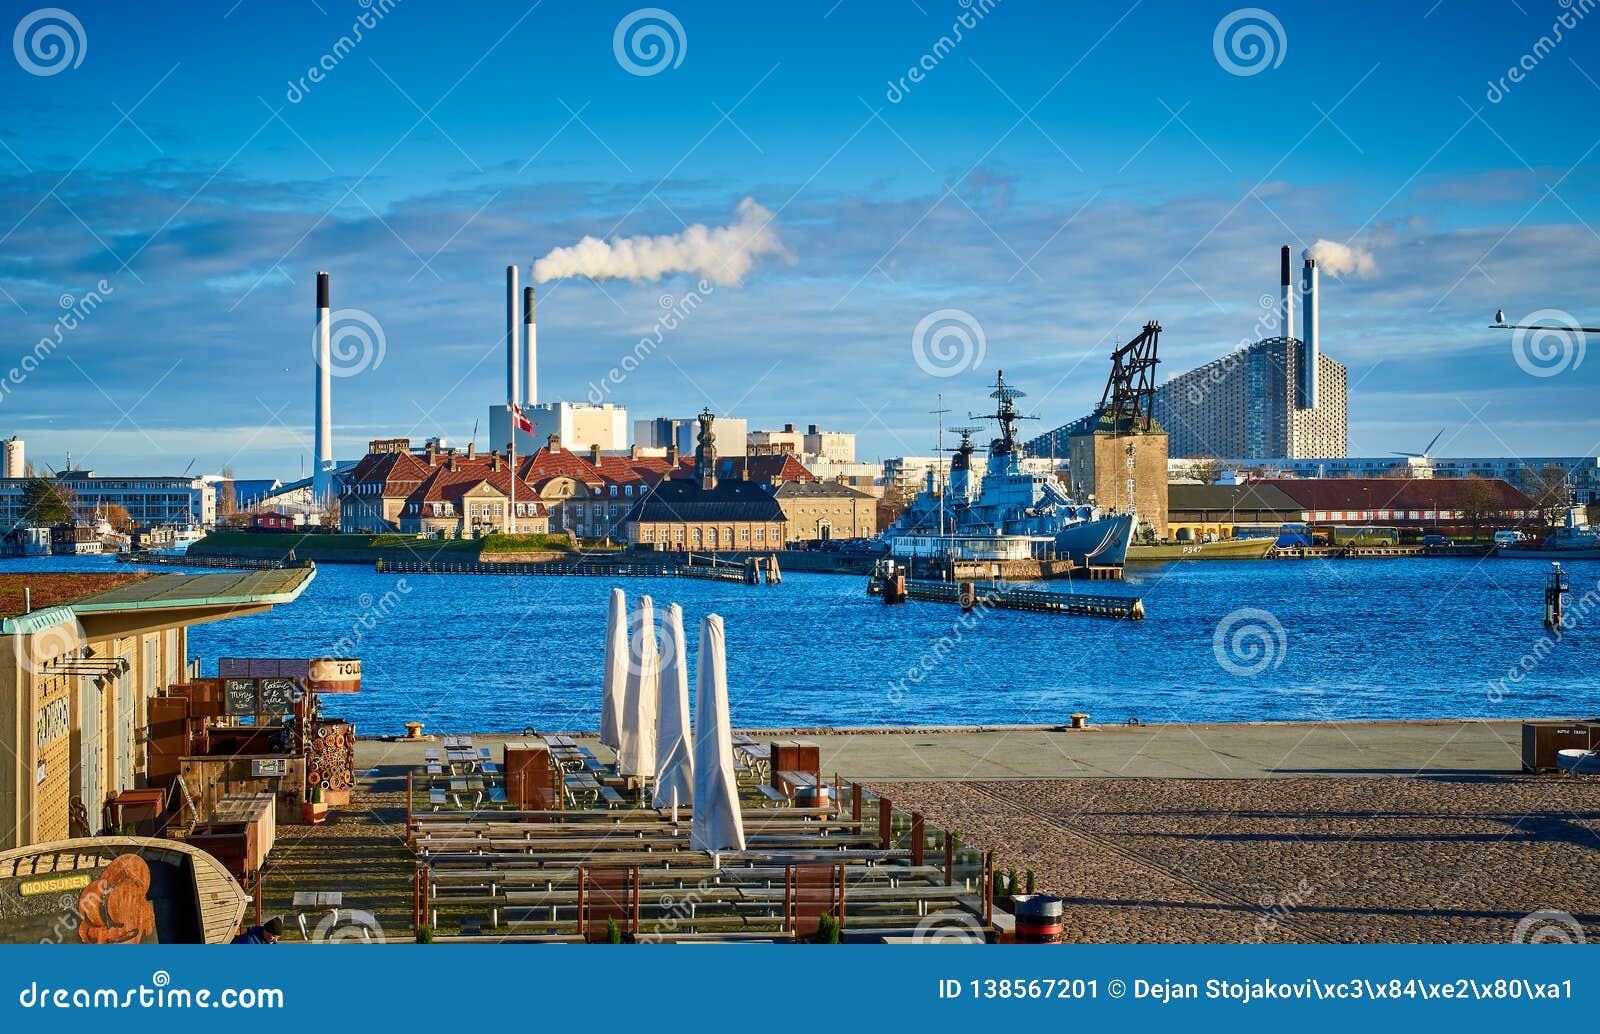 Amager Bakke Power Plant, Copenhagen, Denmark Editorial Photo - Image